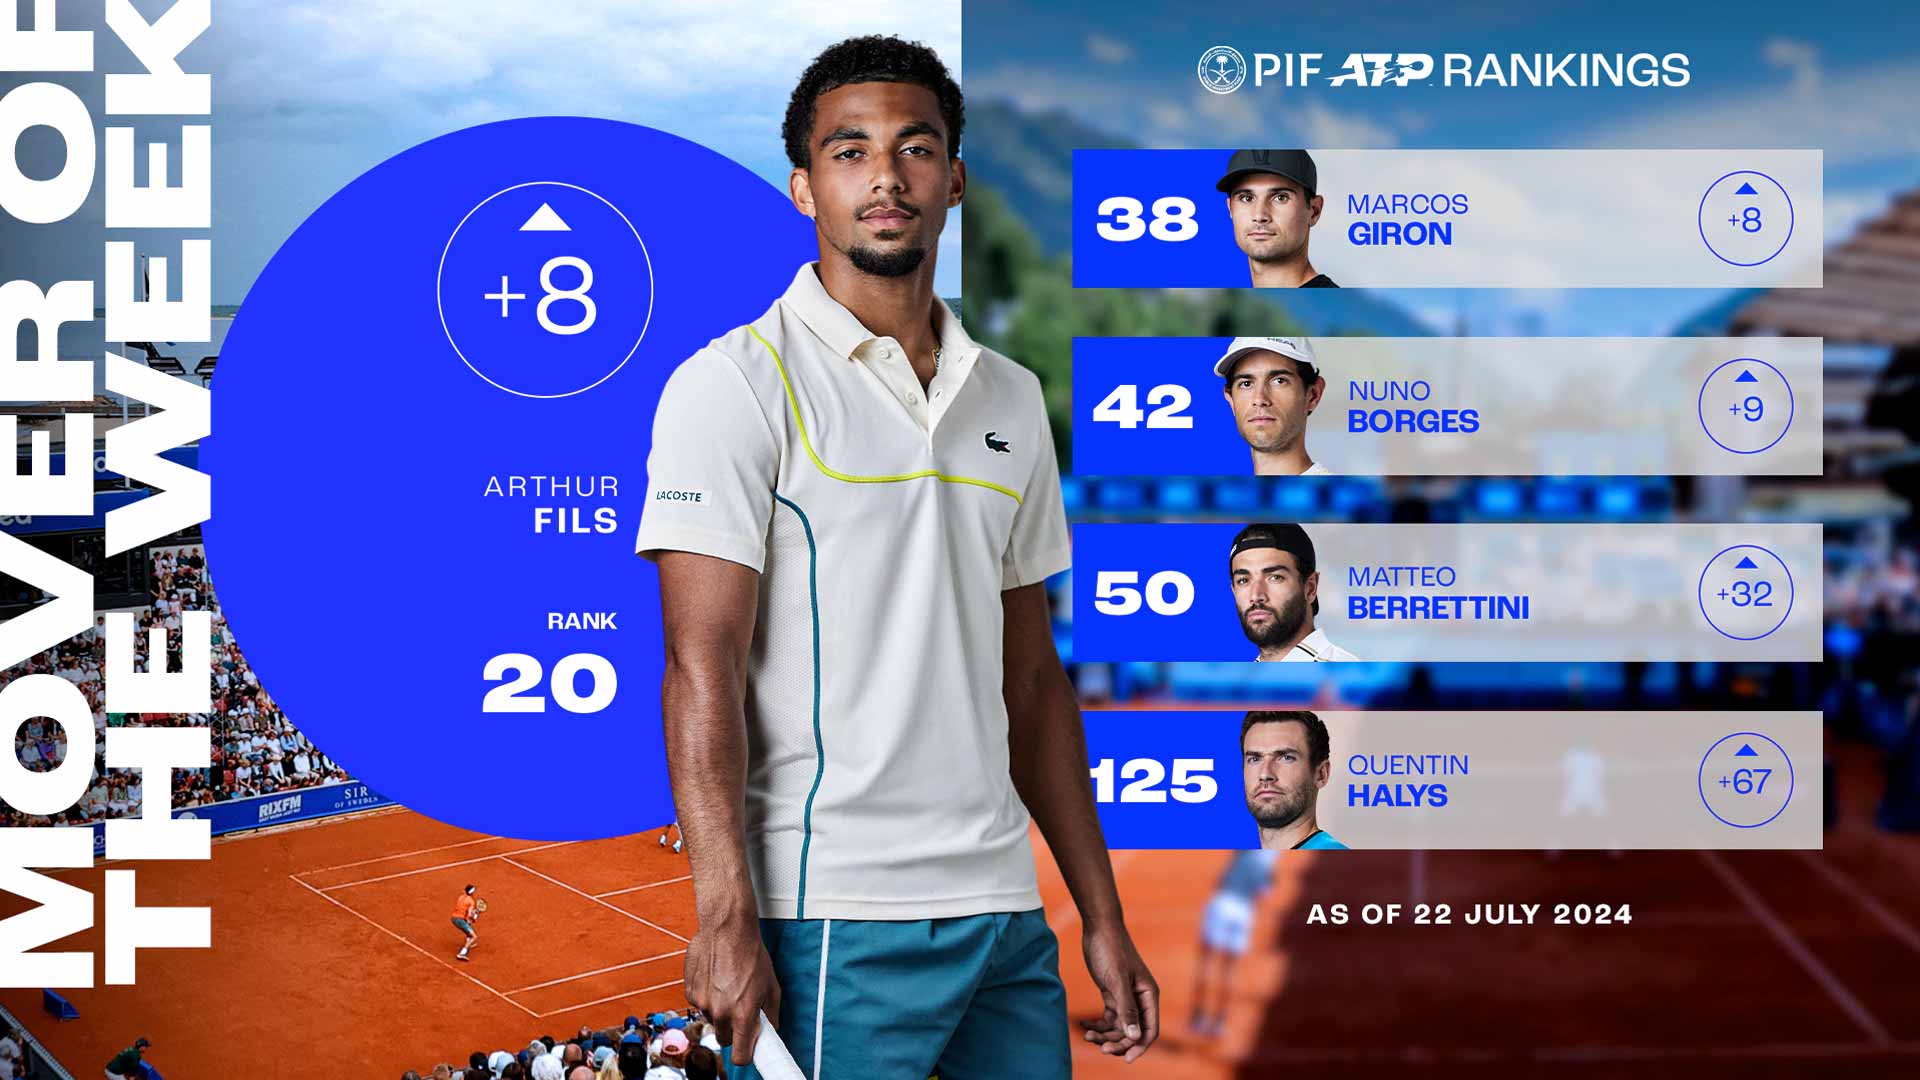 Arthur Fils firma la mejor posición de su carrera como No. 20 del PIF ATP Rankings tras ganar el título de Hamburgo.